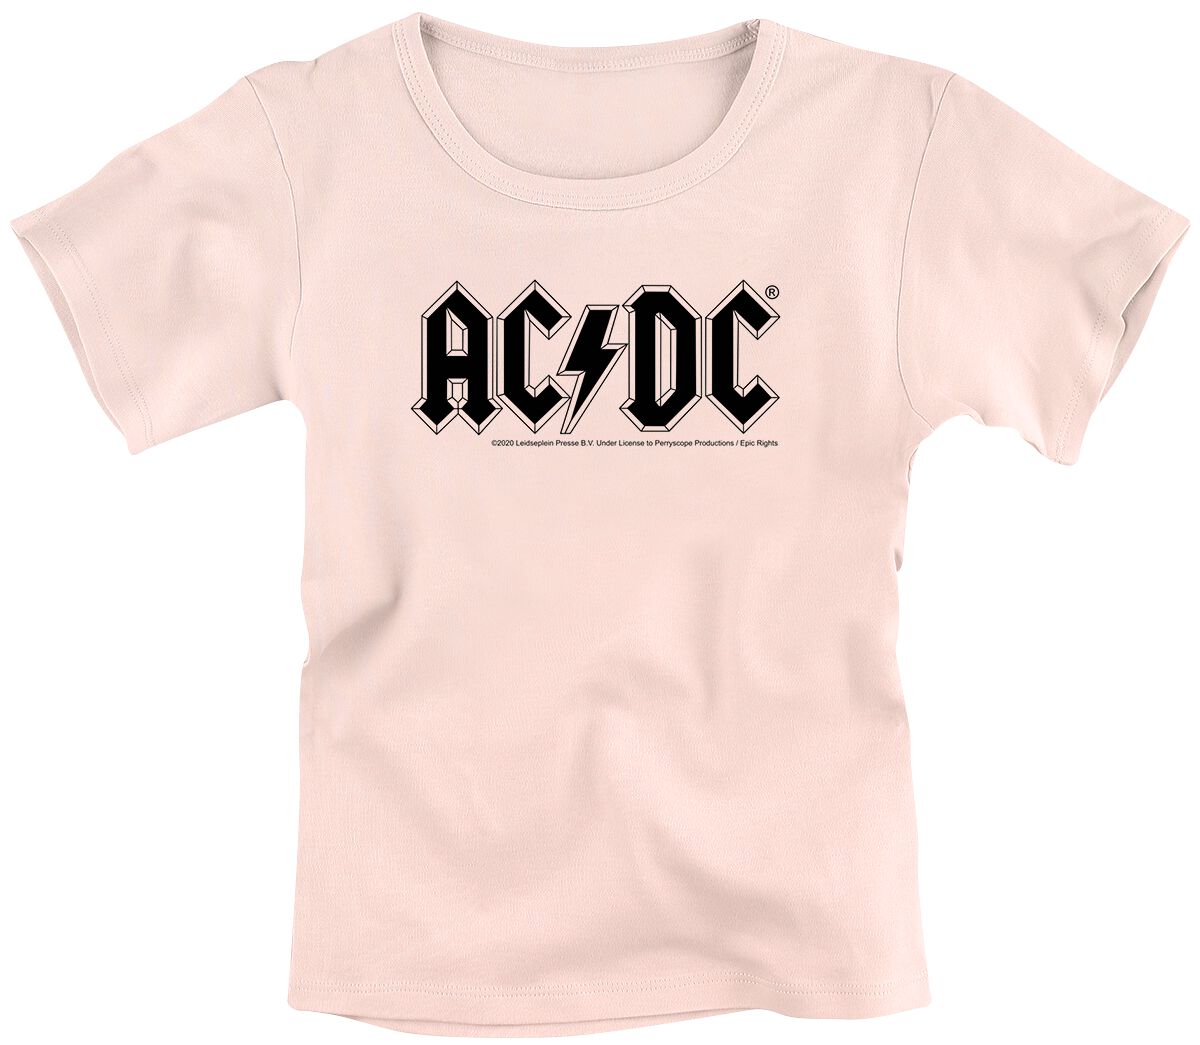 T-shirt de AC/DC - Metal-Kids - Logo - 104 à 164 - pour filles - rose clair